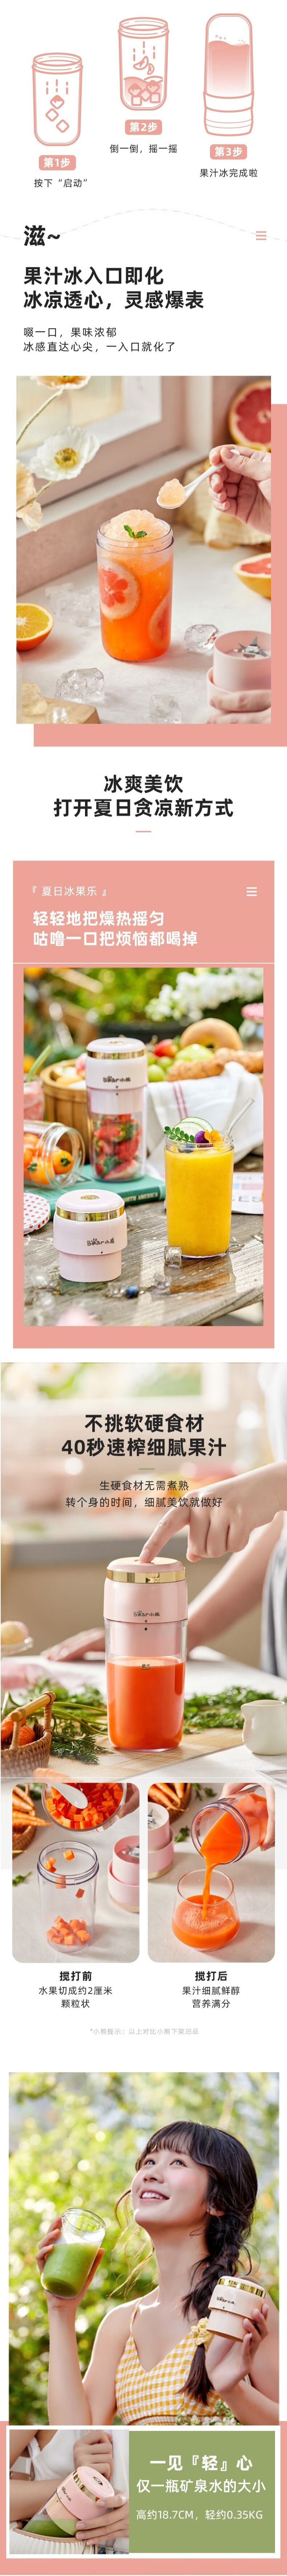 【中国直邮】Bear小熊 无线榨汁杯 小型便携果汁机 迷你家用搅拌料理杯 300ml 粉色